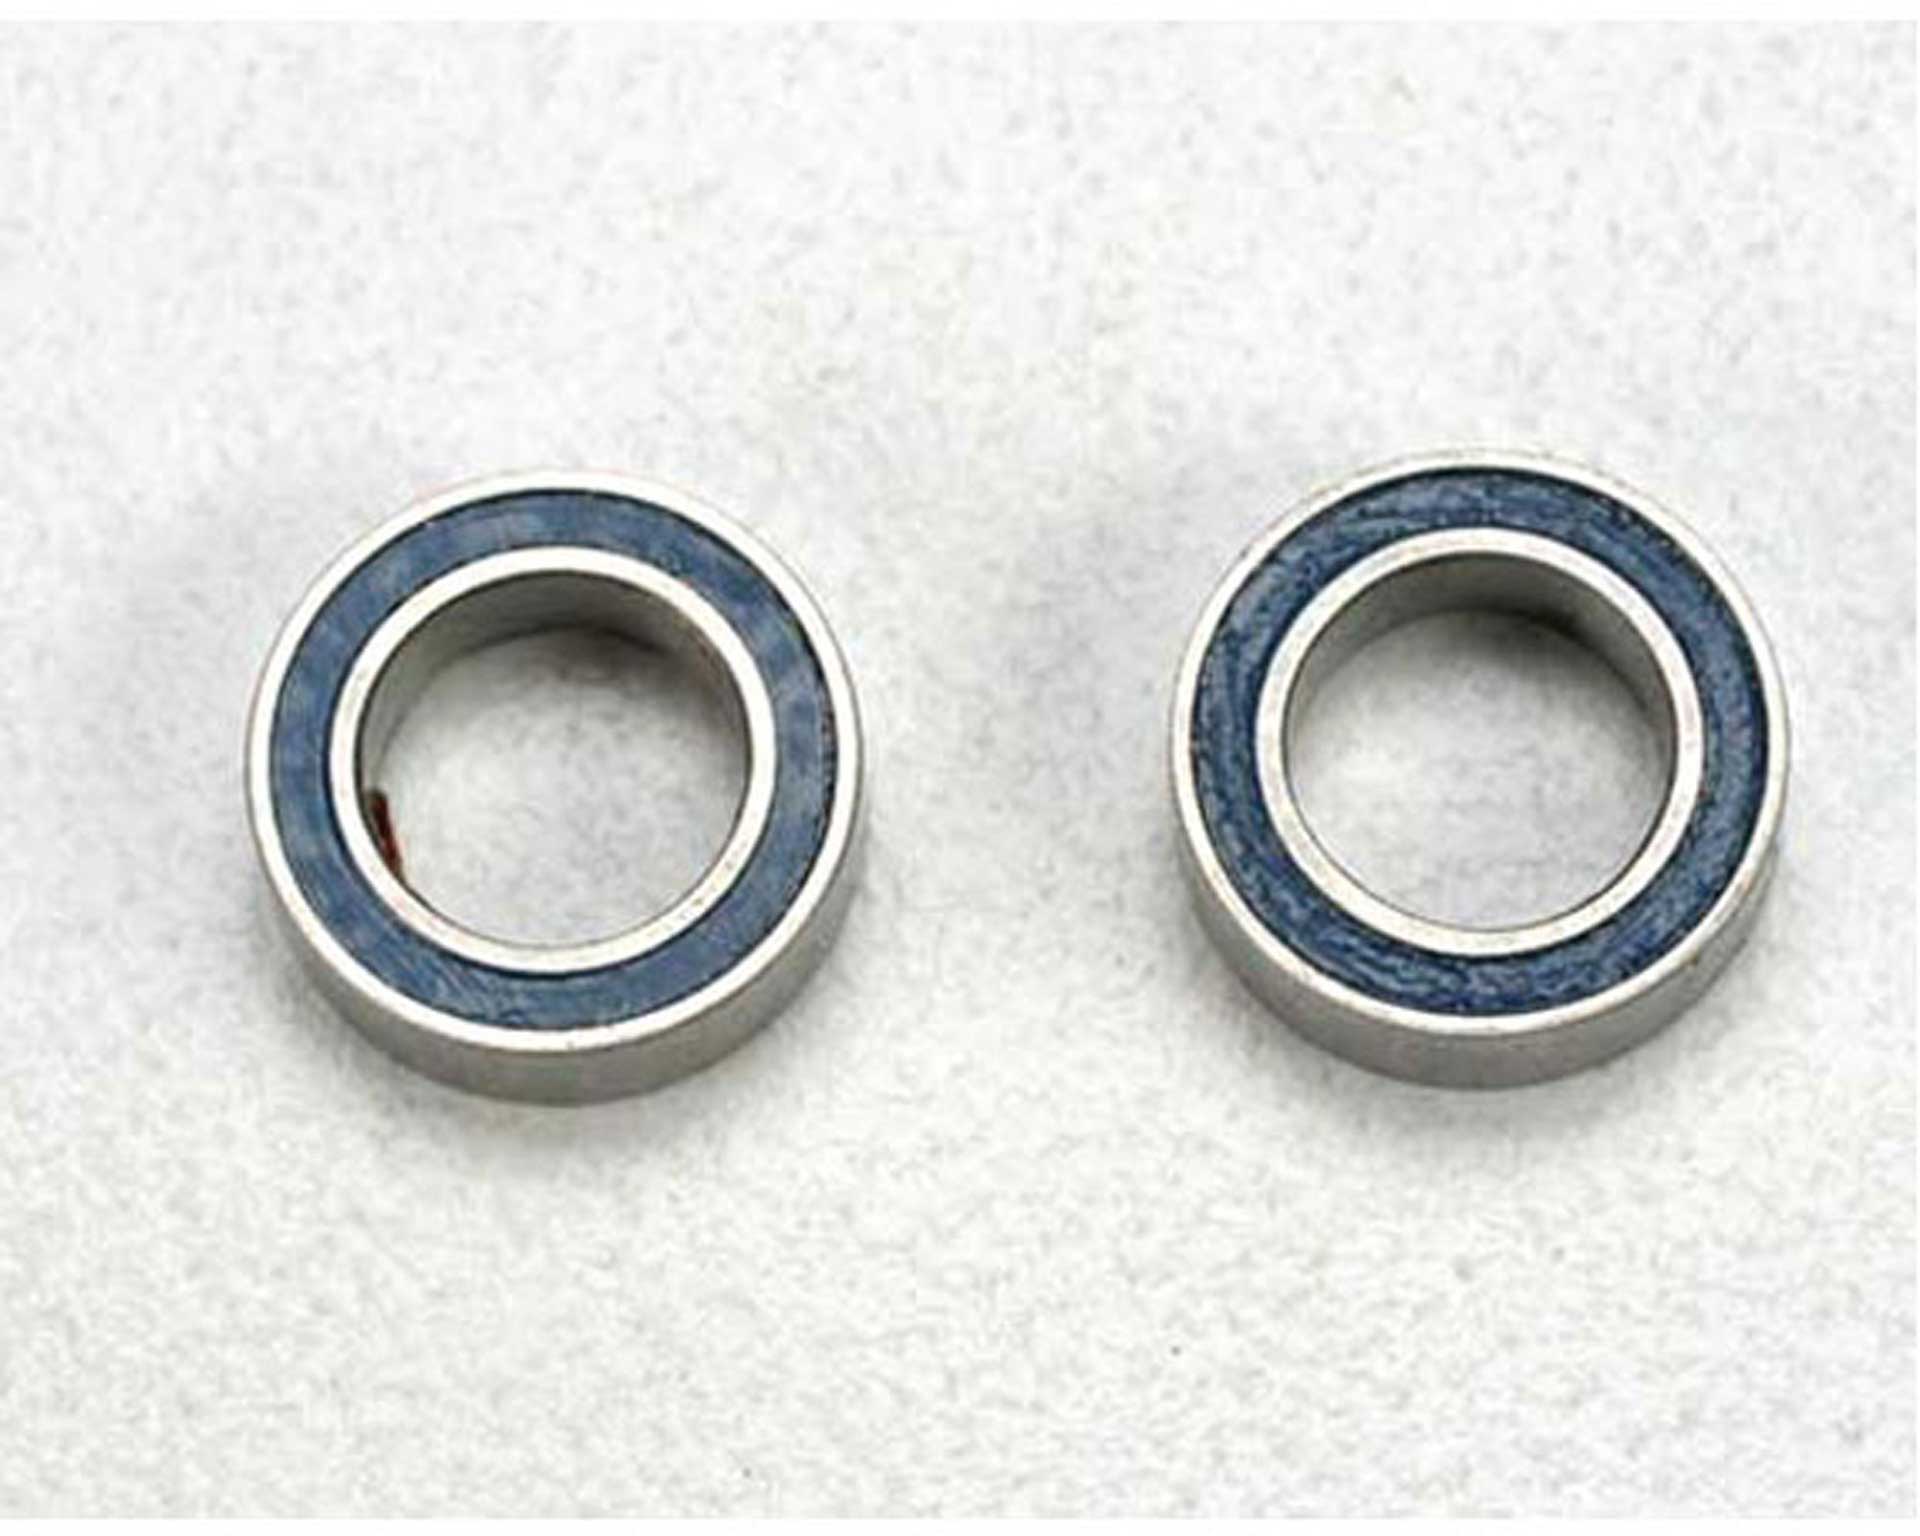 TRAXXAS Ball bearing, blue rubber seal (5x8x2.5mm) (2)